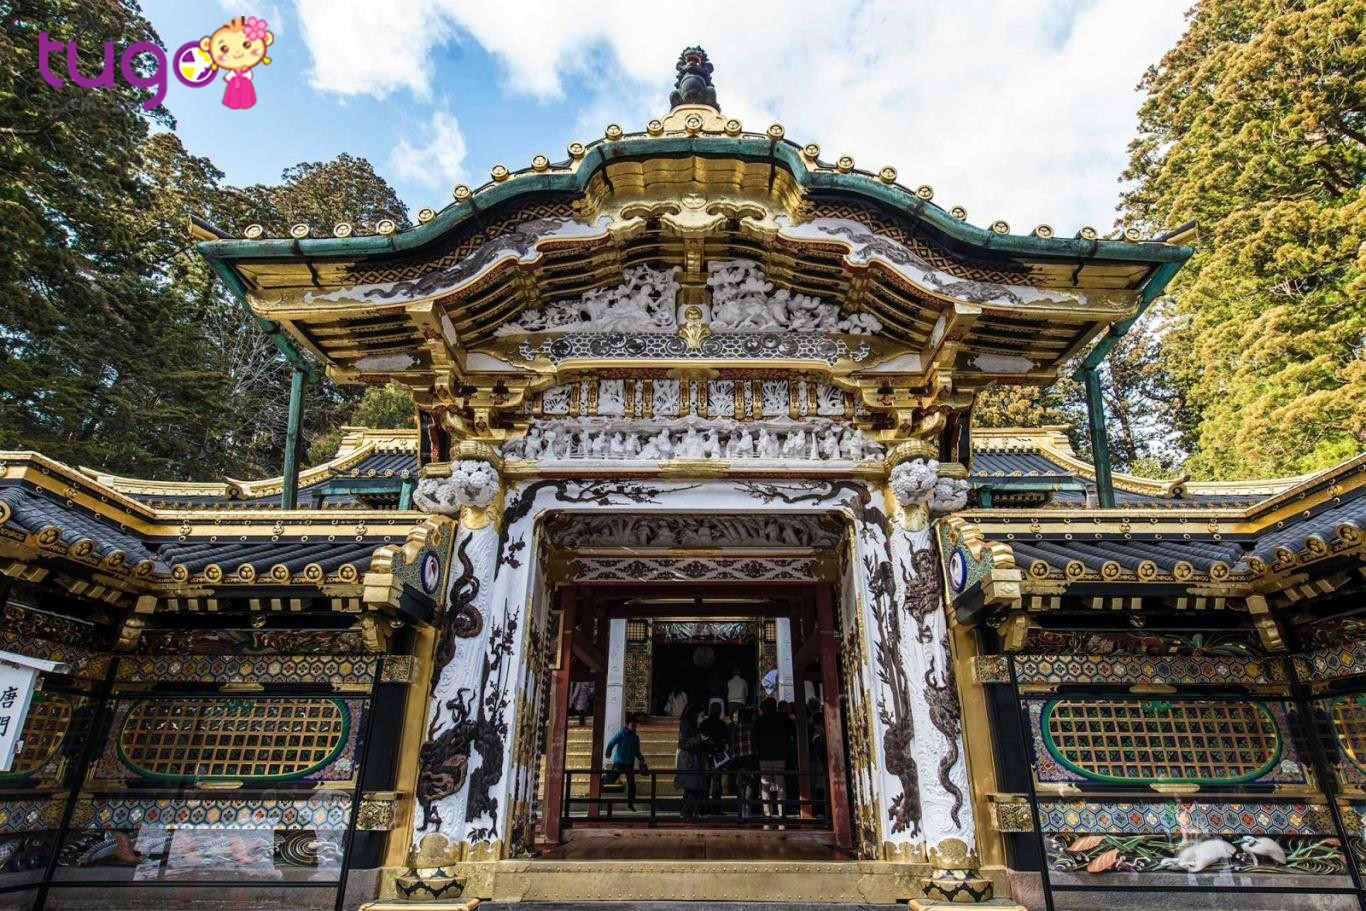 Ngay trung tâm Nikko là một quần thể đền, chùa Nikko được Unesco công nhận là di sản văn hóa thế giới năm 1999